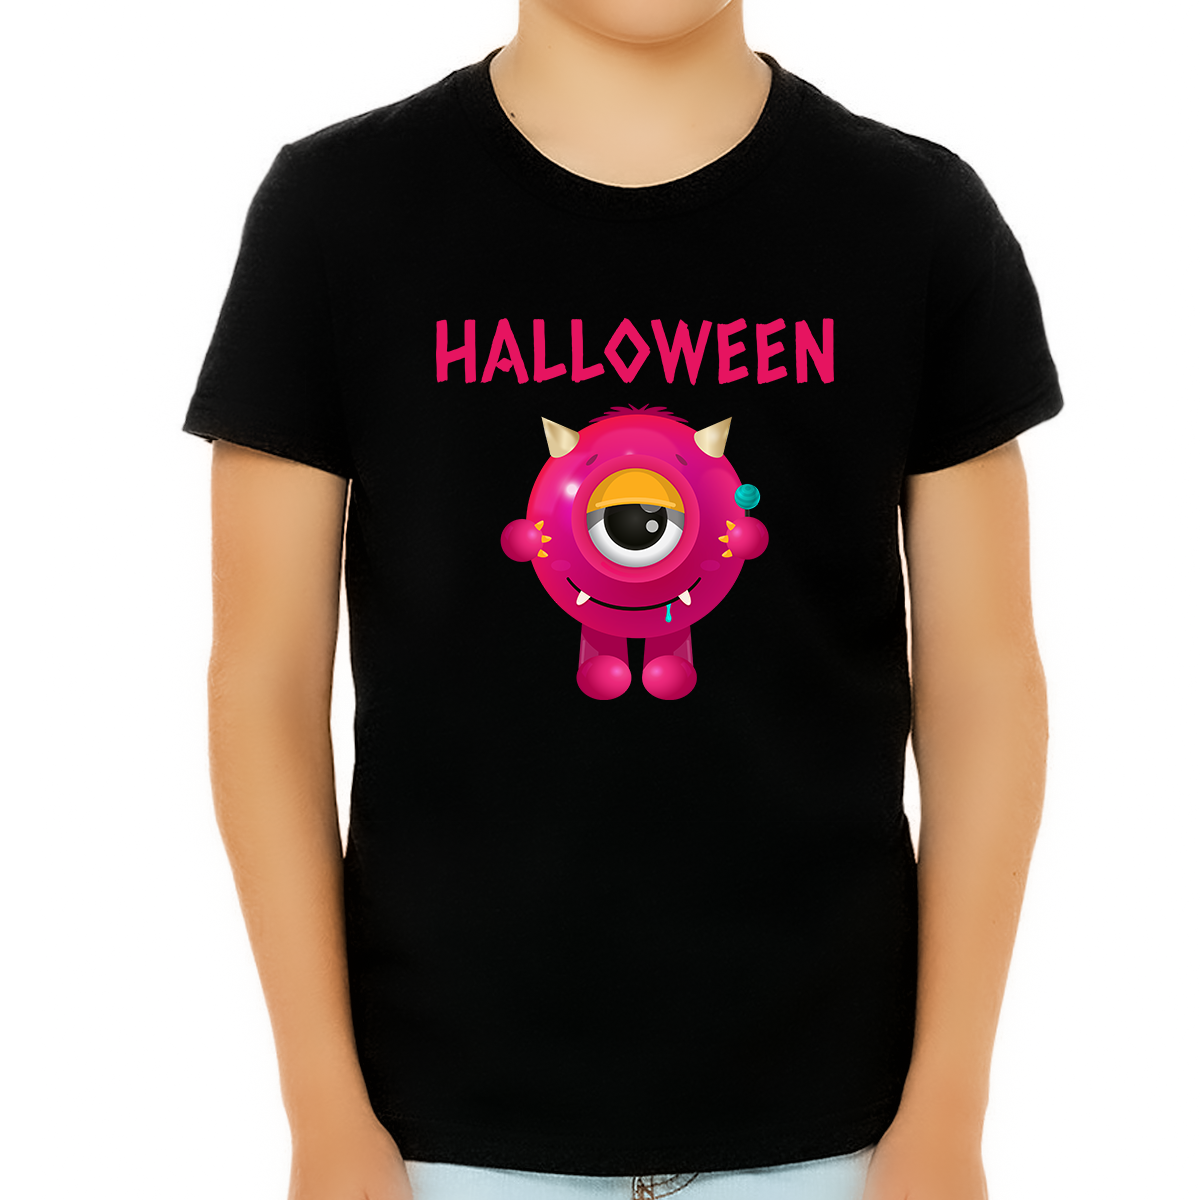 Fire Fit Designs Cute One Eye Monster Shirt Boys Halloween Shirt Halloween Shirts for Boys Kids Halloween Shirt